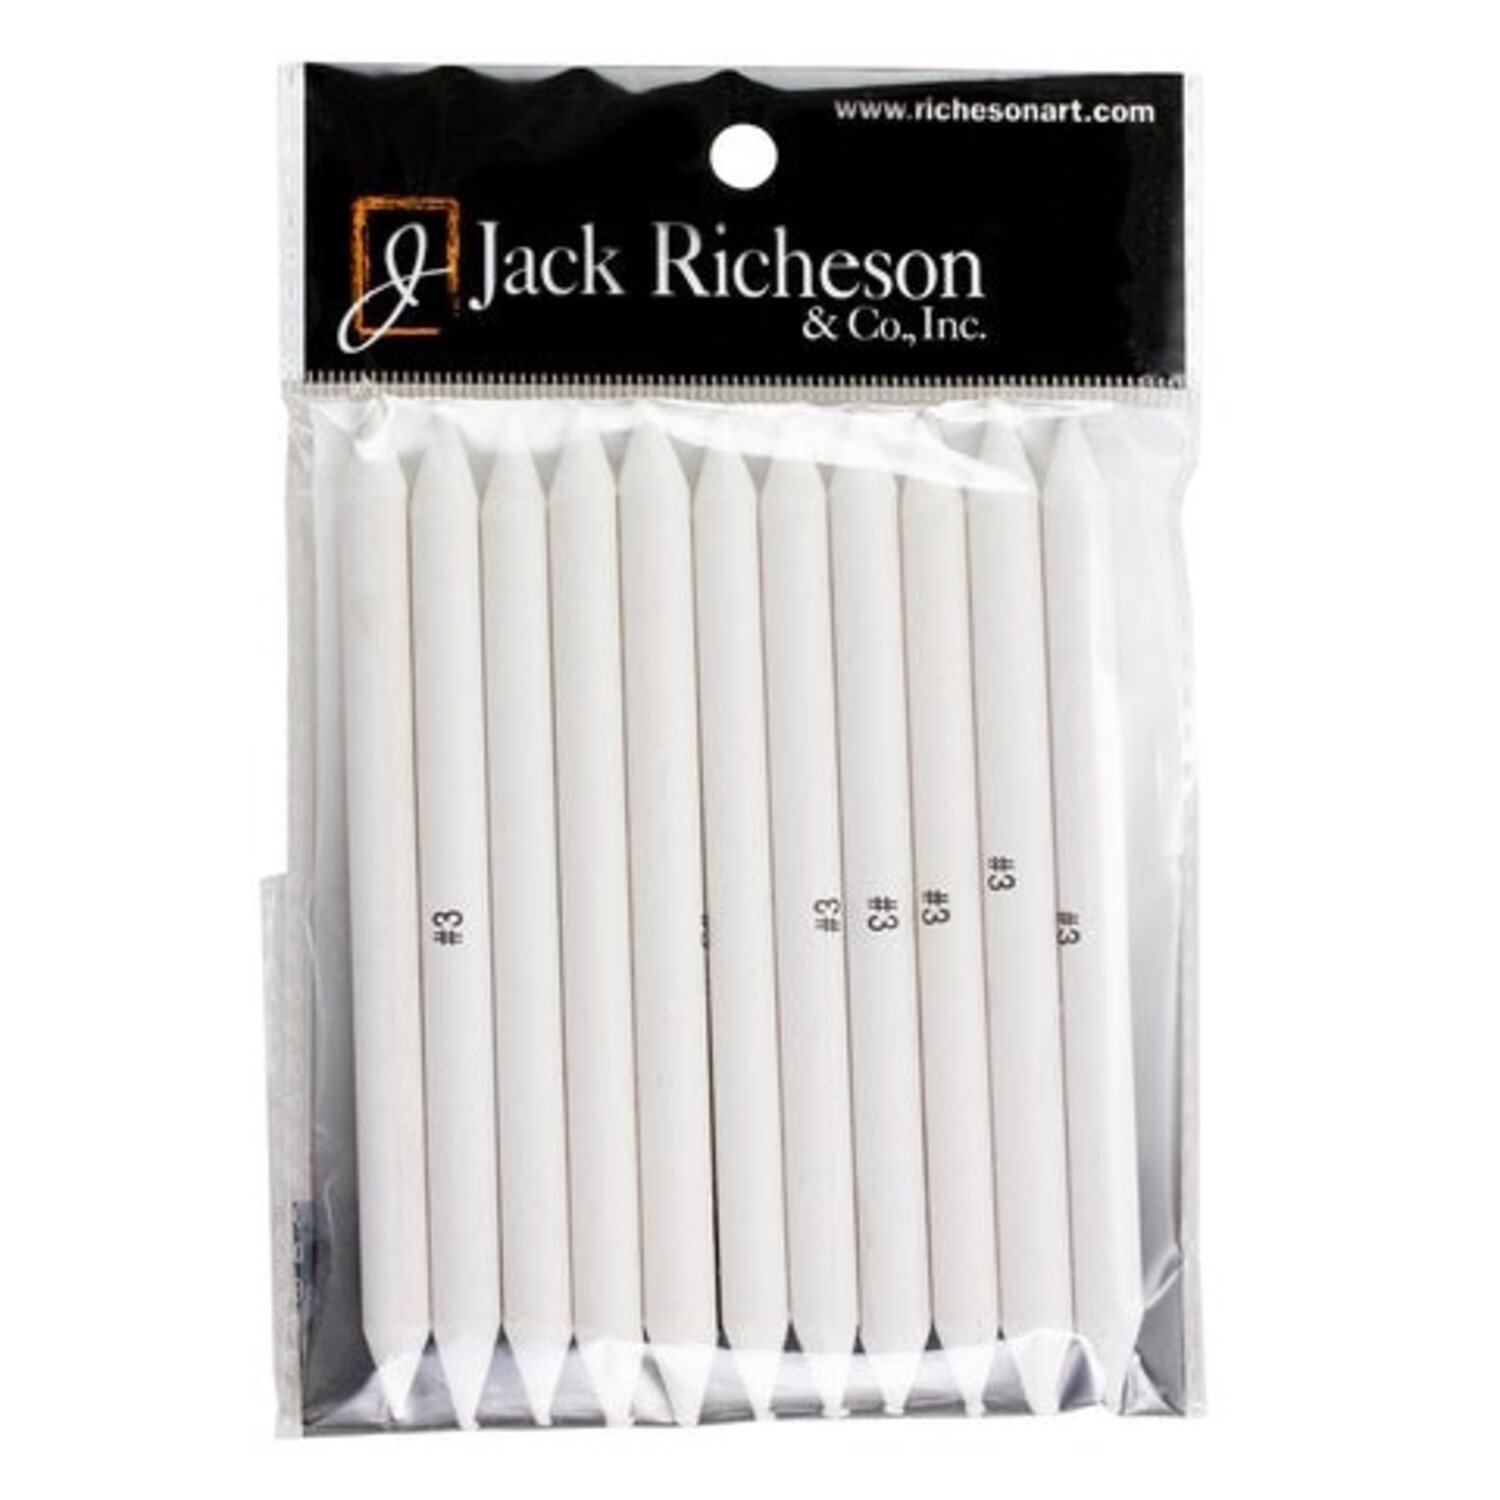 Jack Richeson Jack Richeson Watercolor Pans, Set of 16